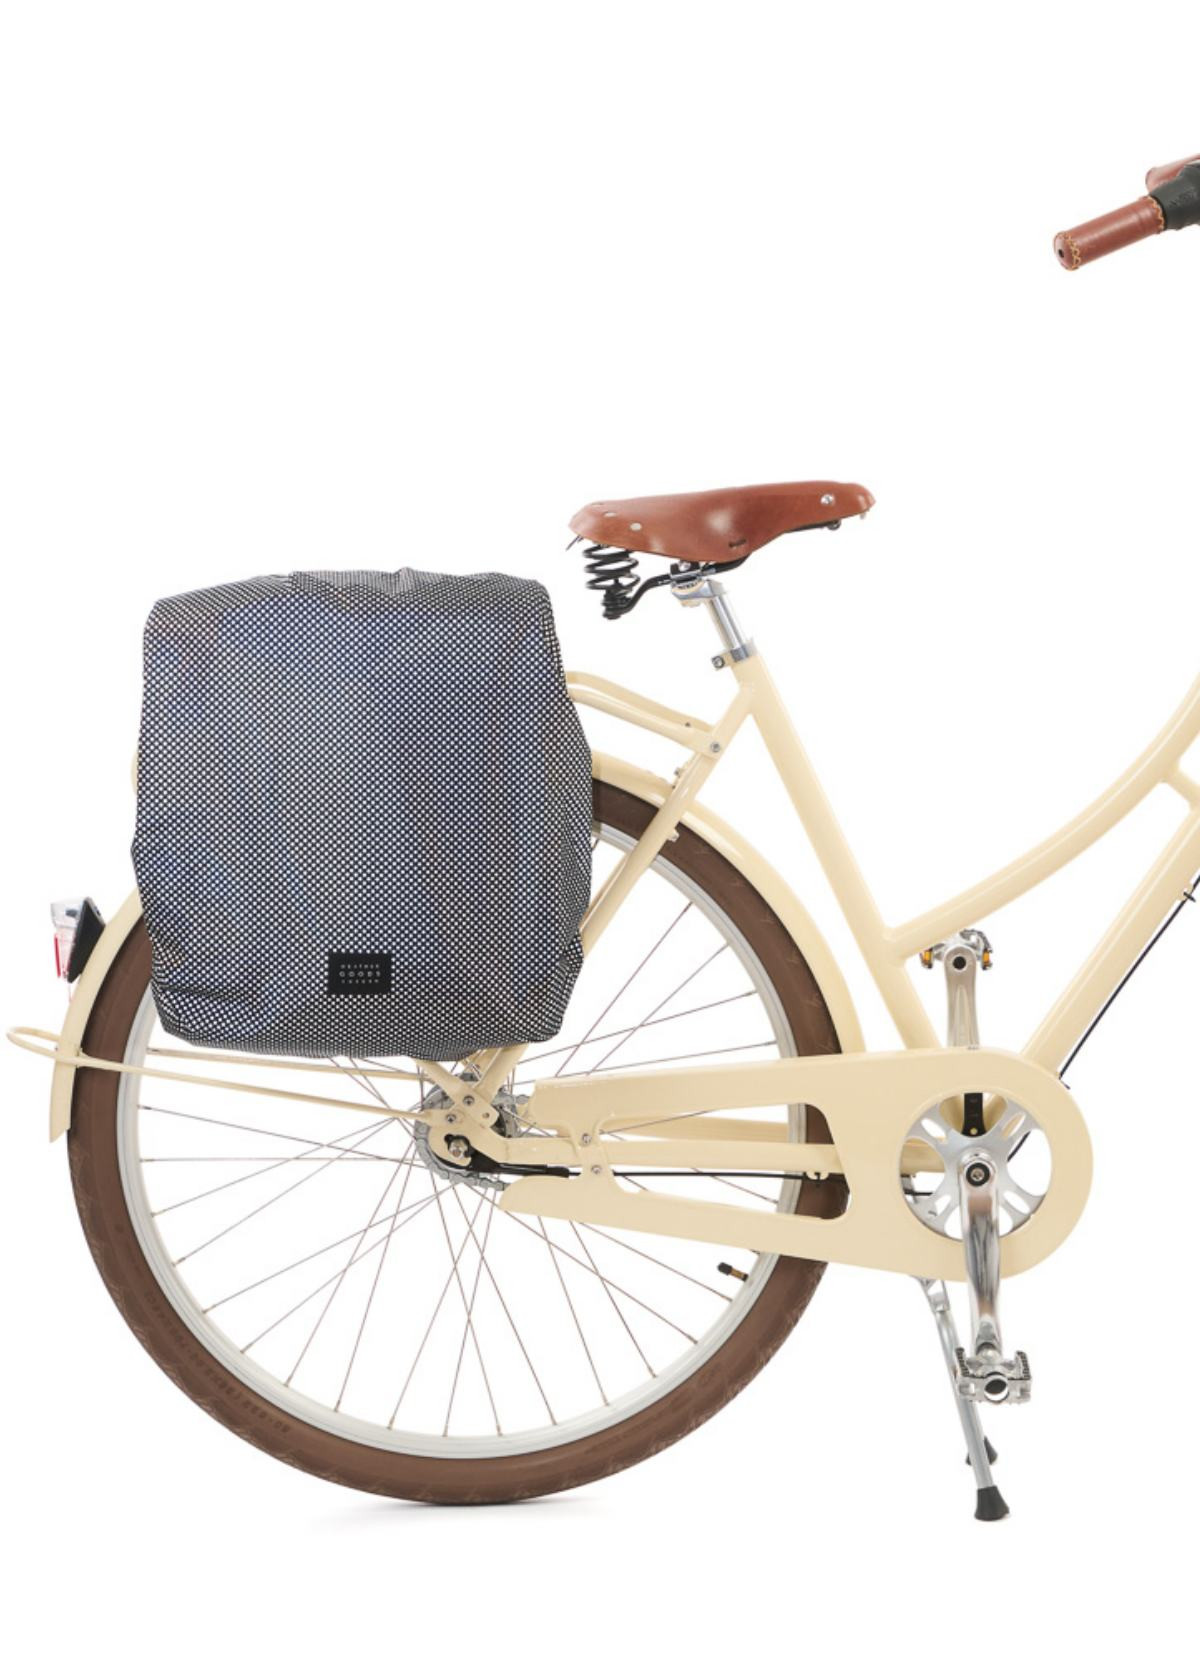 Housse de protection imperméable pour panier de vélo, imperméable